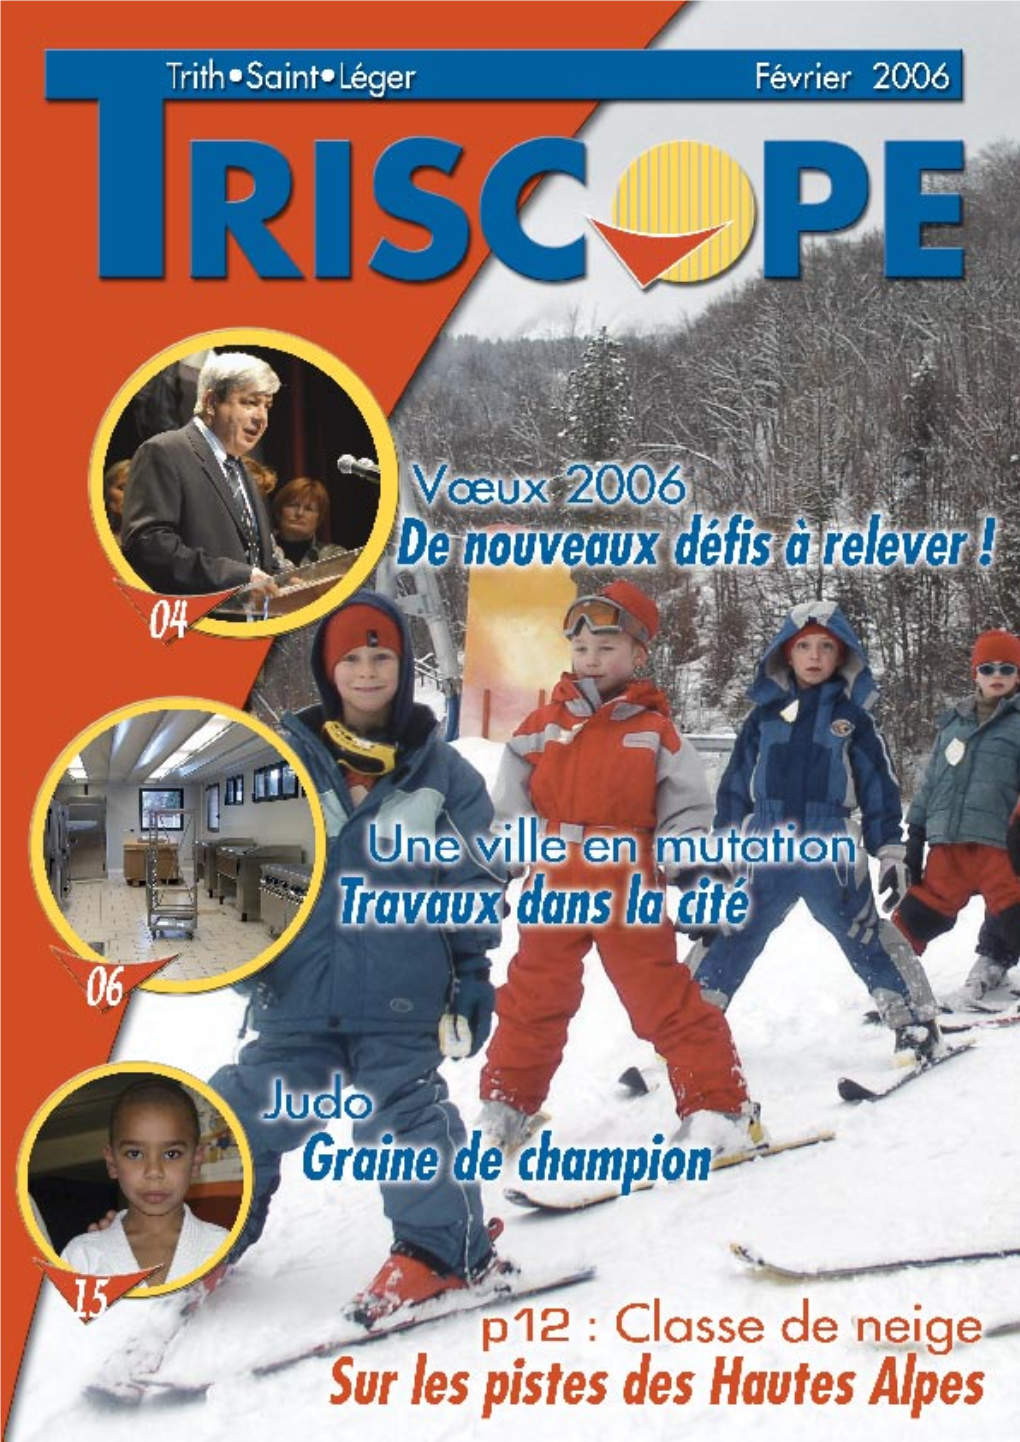 Triscope Février.Indd